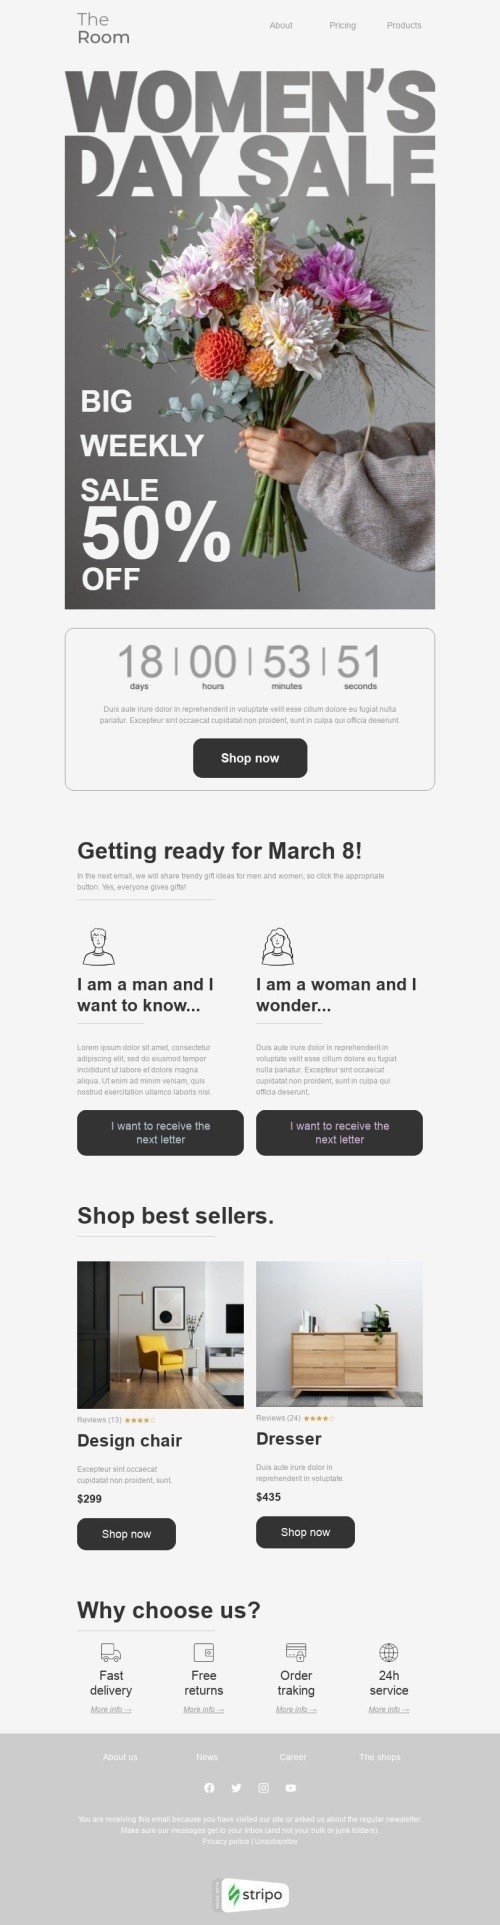 Modèle de courrier électronique Journée de la Femme «Grande vente hebdomadaire» pour le secteur Mobiliers, Intérieur & DIY Affichage ordinateur